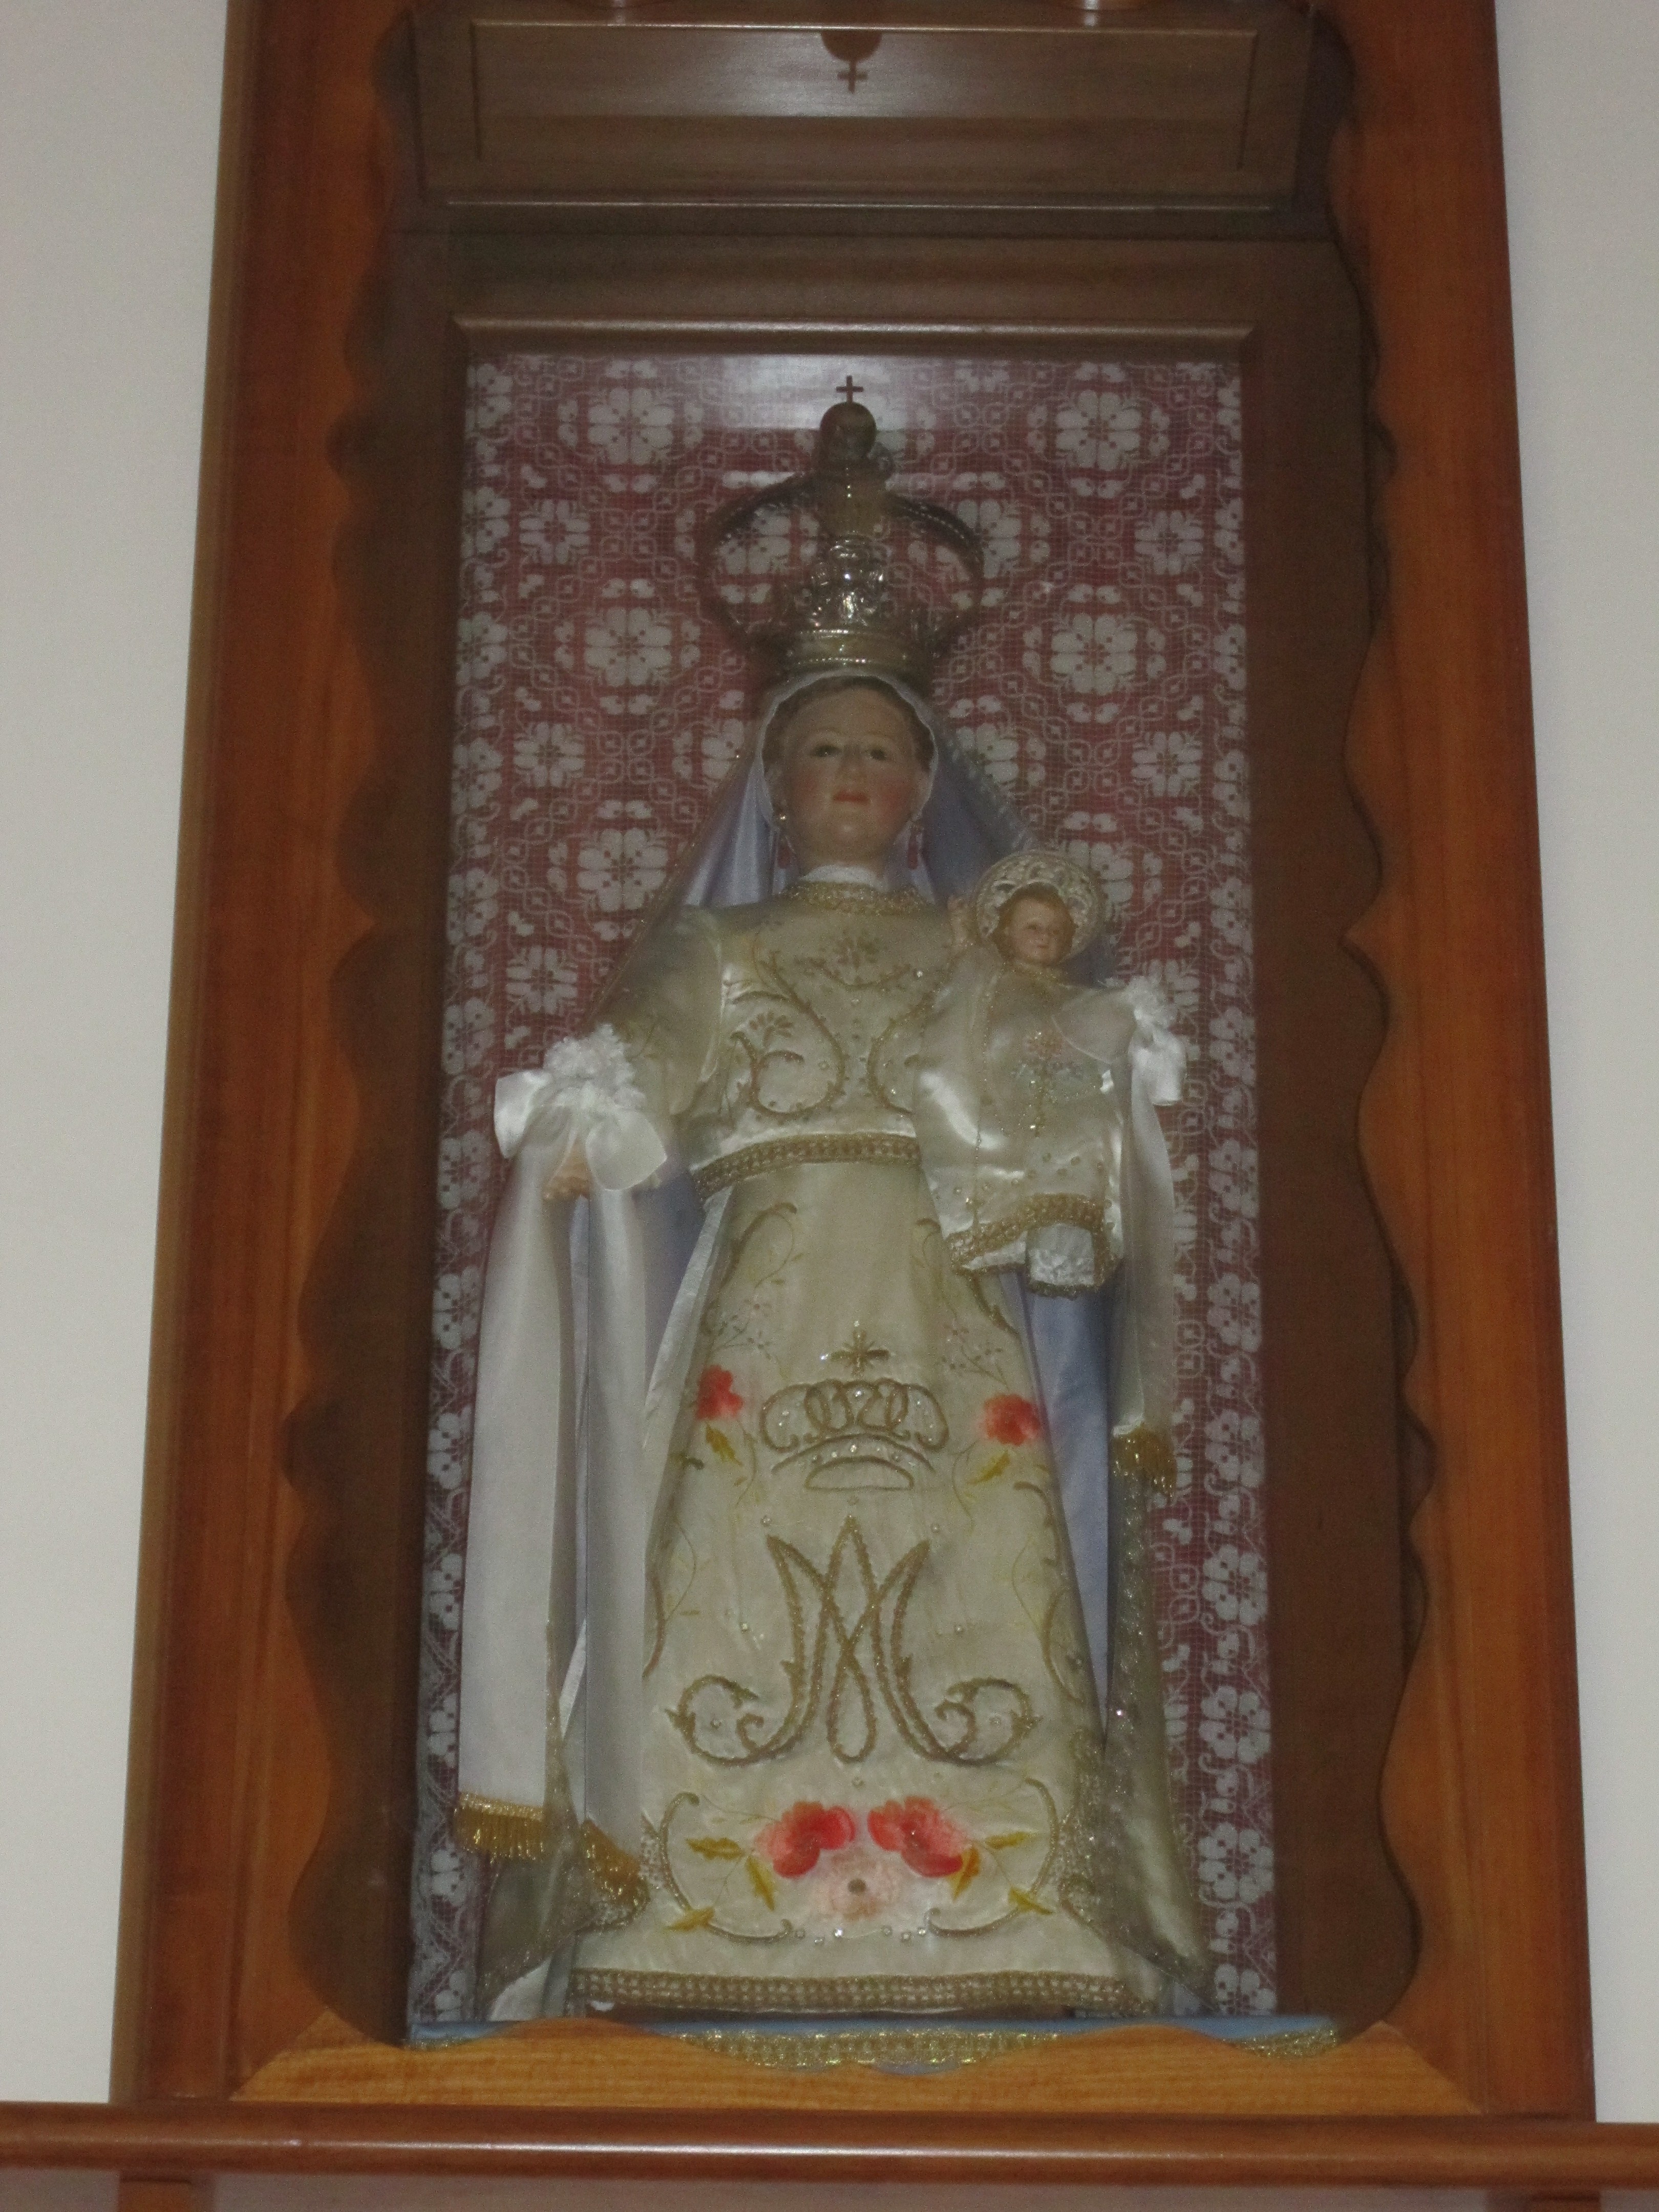 Nostra signora di paulis, madonna con bambino (statua)